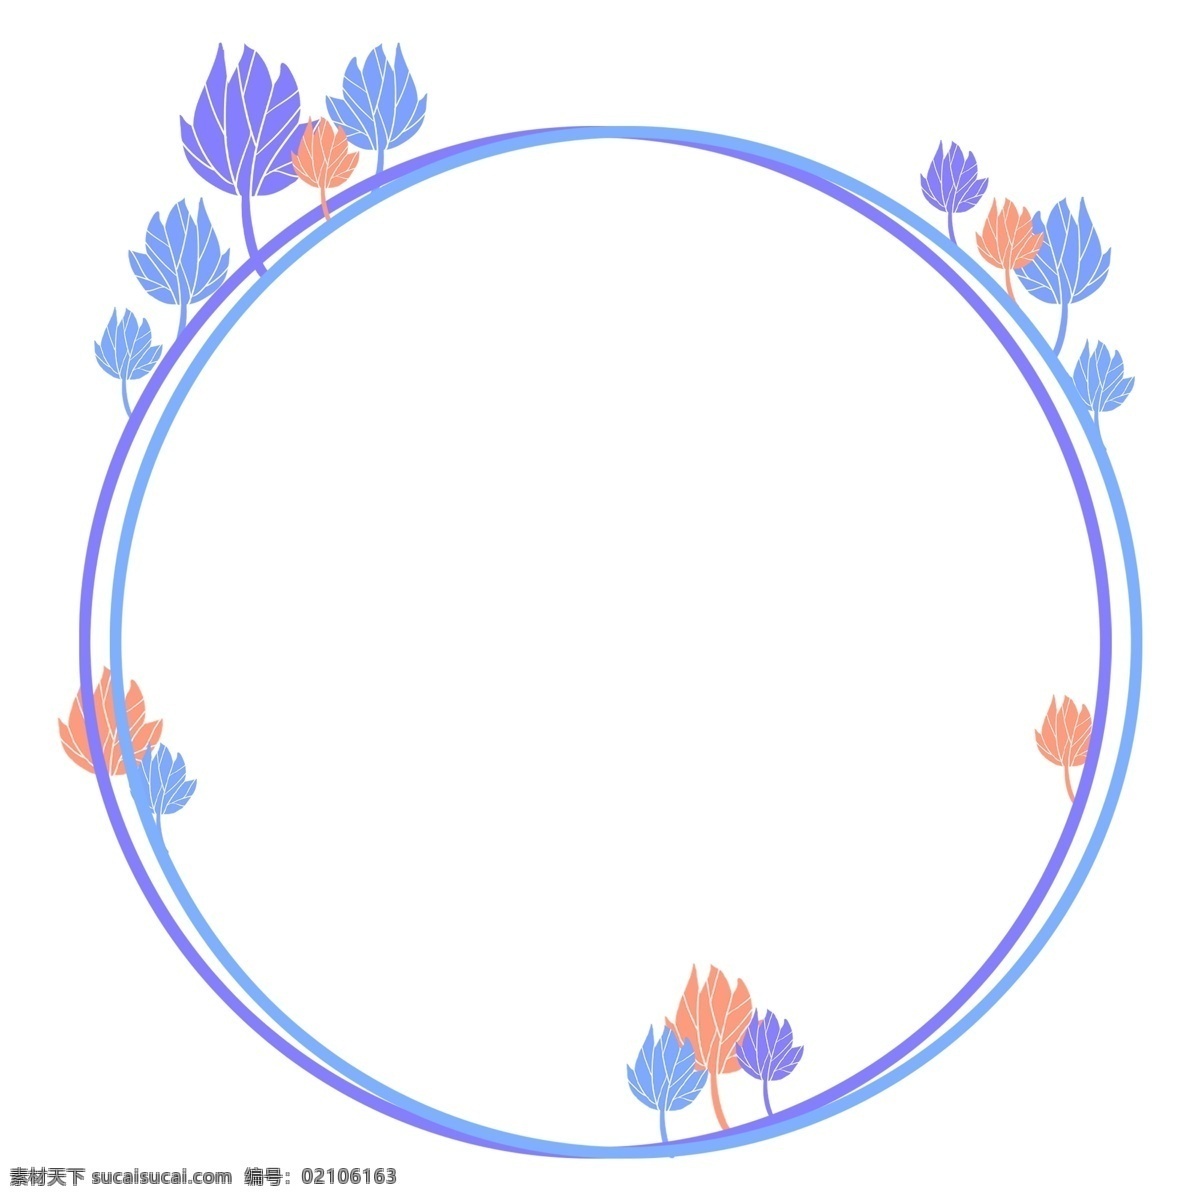 植物 边框 卡通 插画 卡通插画 边框插画 框架 装饰边框 简易边框 植物的边框 蓝色的边框